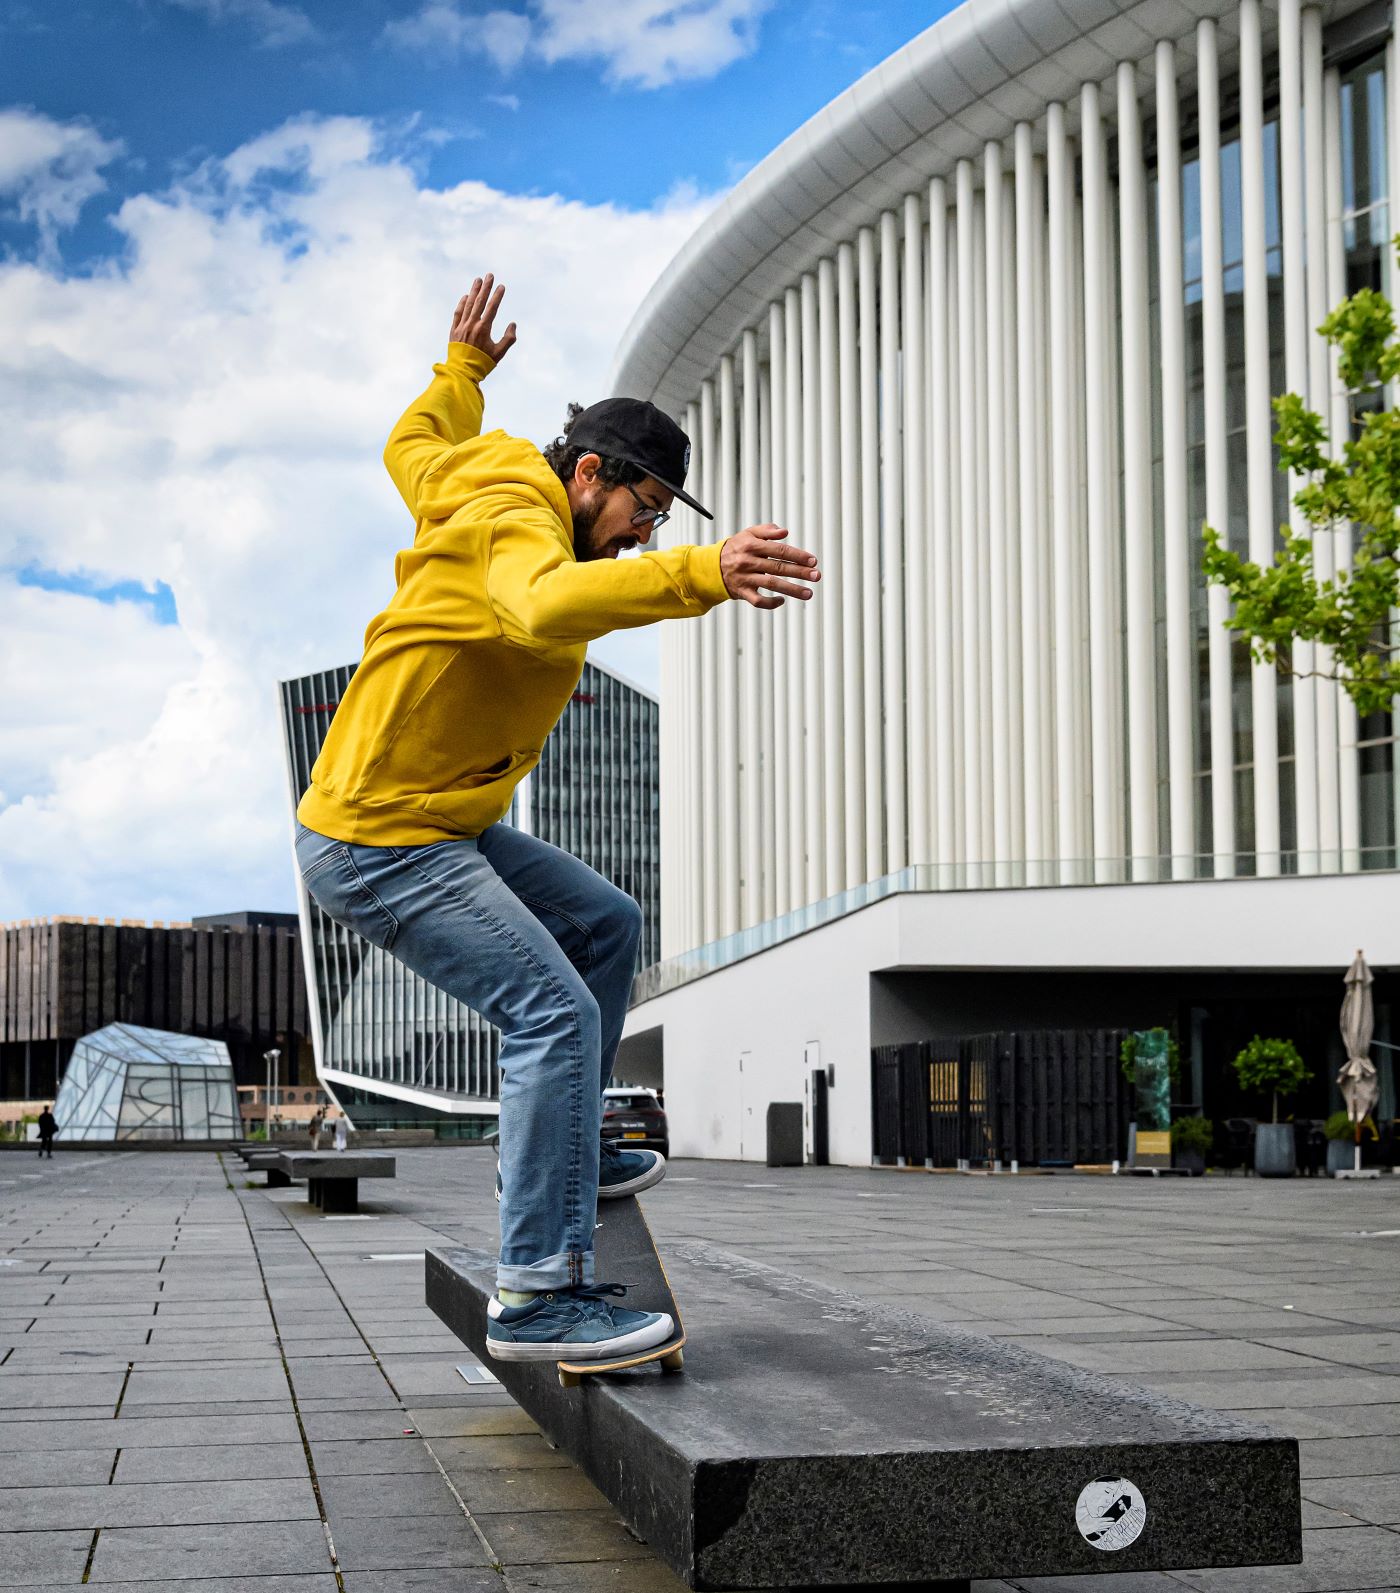 Ein Skateboarder mit gelbem Kapuzenpulli skatet am Rand einer Bank vor einem großen Gebäude entlang. Seine Hände sind in der Luft.